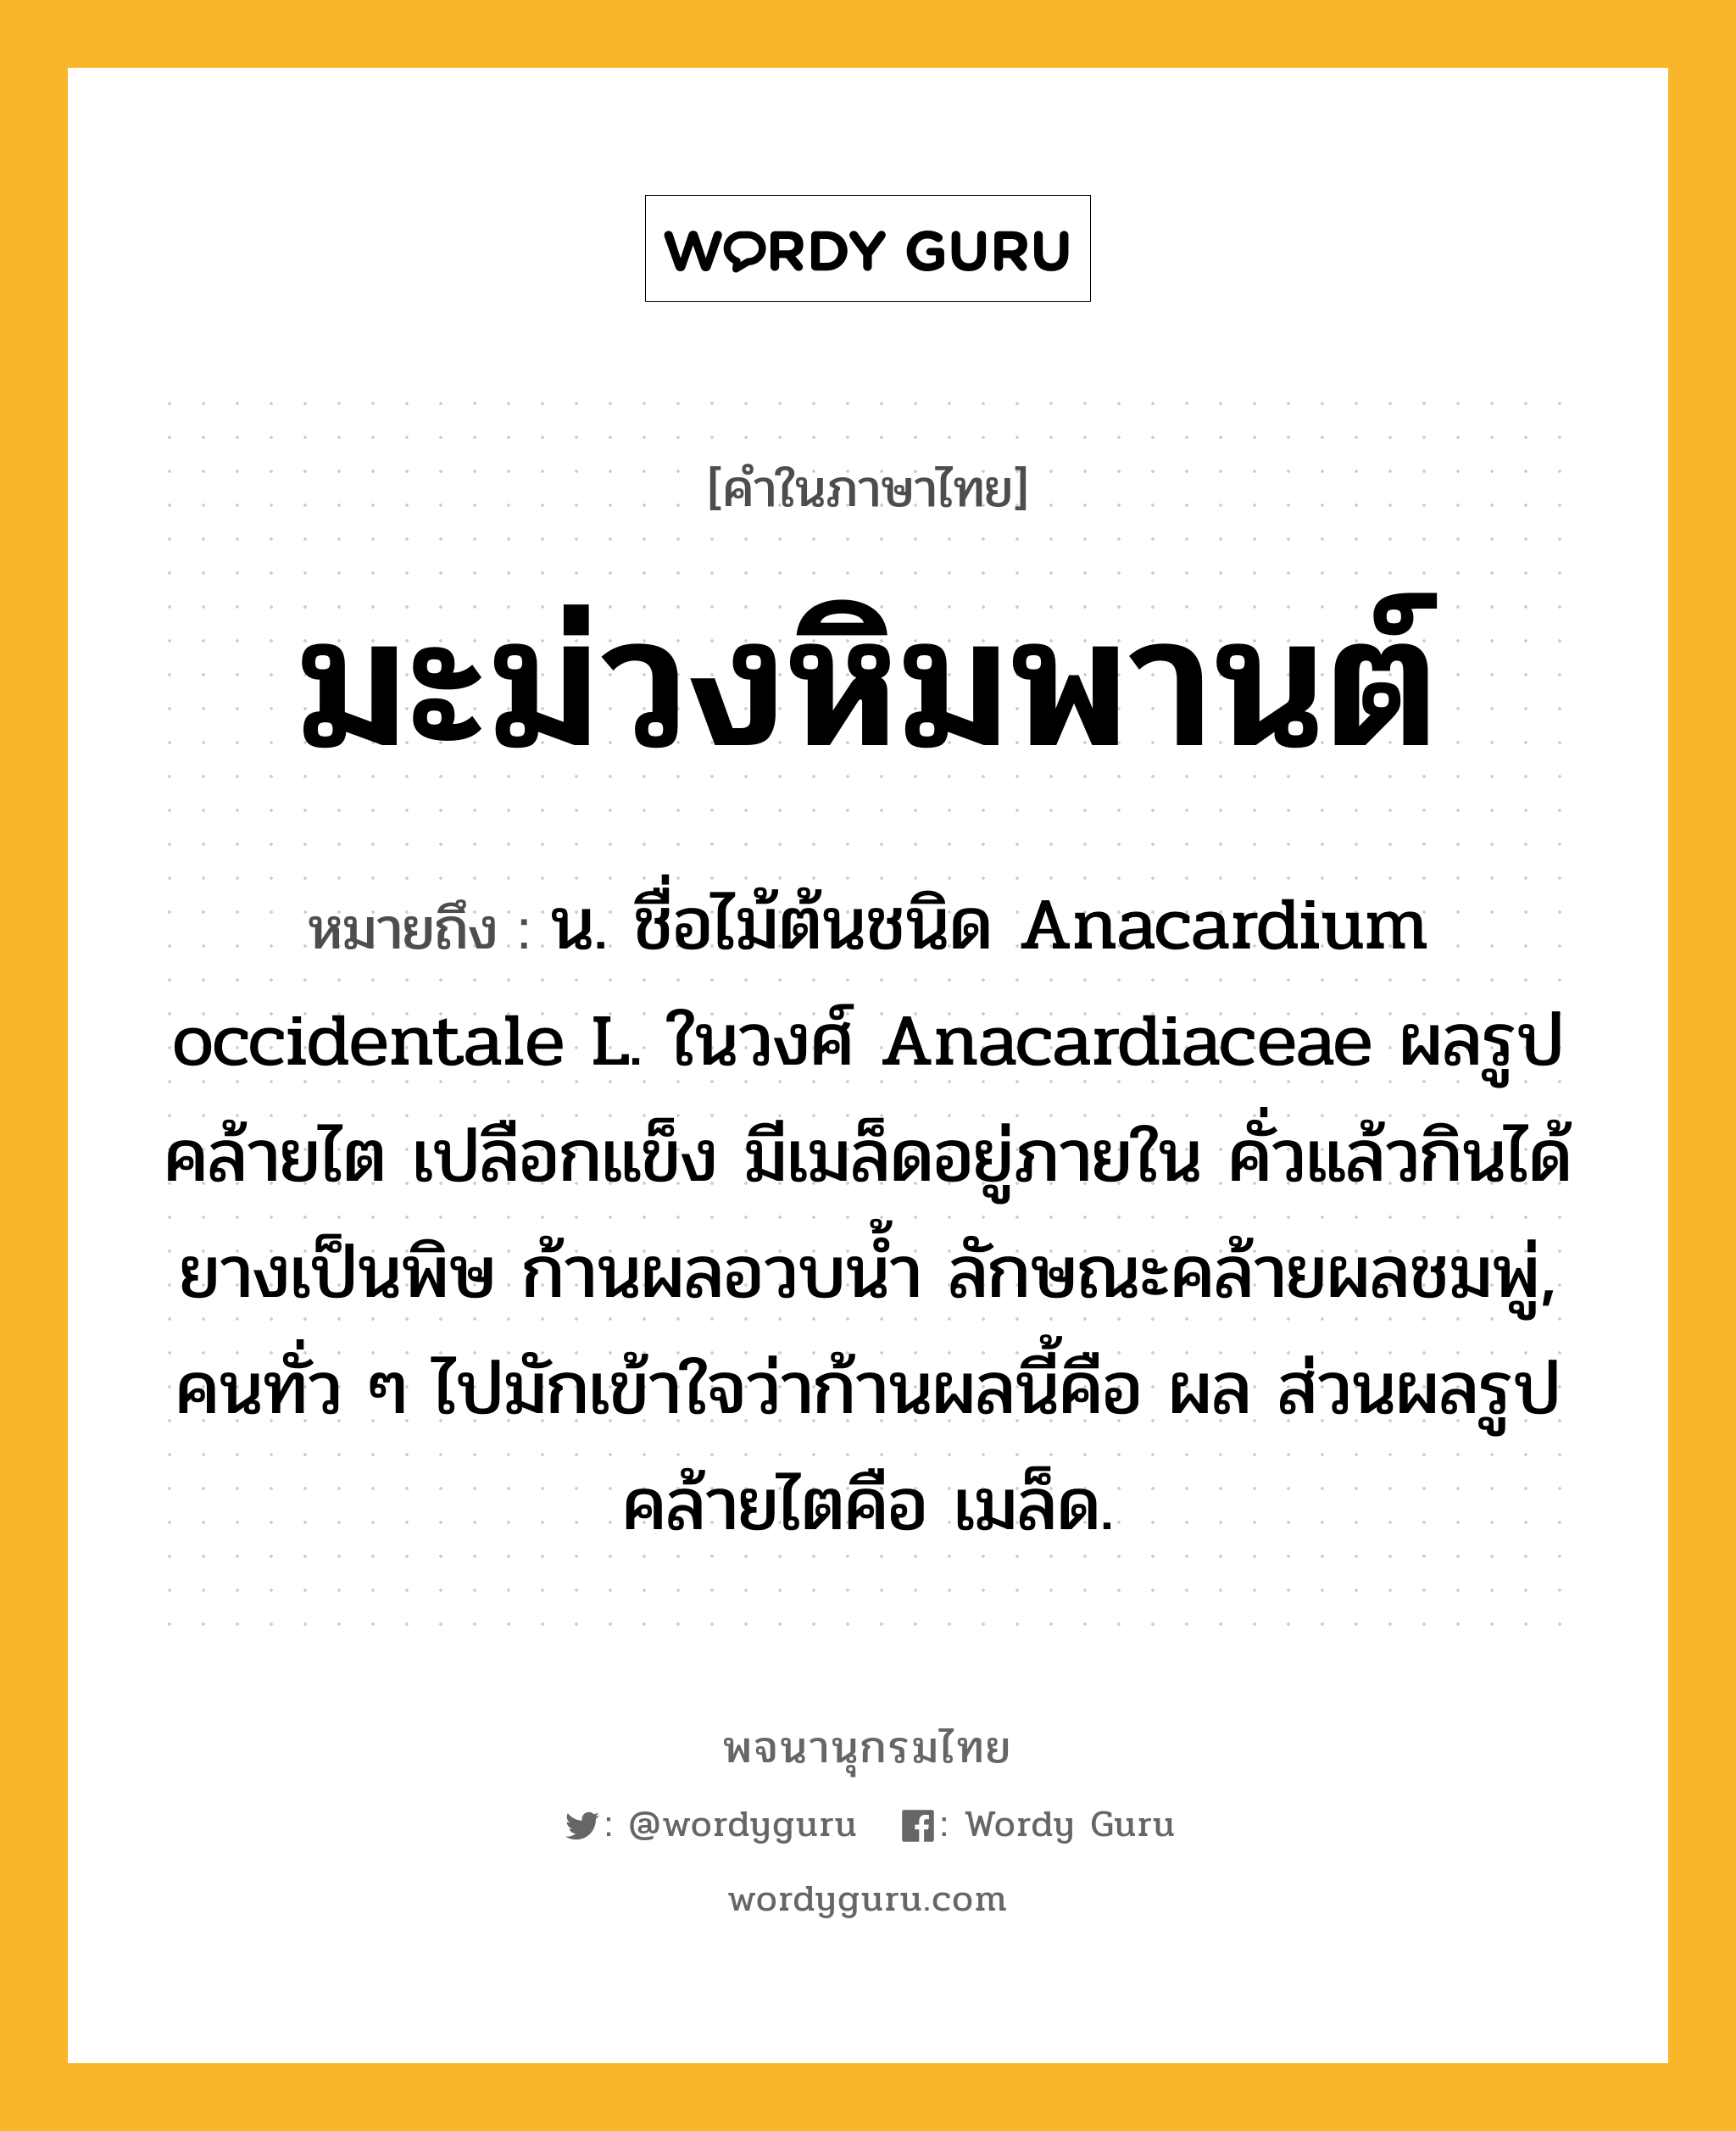 มะม่วงหิมพานต์ ความหมาย หมายถึงอะไร?, คำในภาษาไทย มะม่วงหิมพานต์ หมายถึง น. ชื่อไม้ต้นชนิด Anacardium occidentale L. ในวงศ์ Anacardiaceae ผลรูปคล้ายไต เปลือกแข็ง มีเมล็ดอยู่ภายใน คั่วแล้วกินได้ ยางเป็นพิษ ก้านผลอวบนํ้า ลักษณะคล้ายผลชมพู่, คนทั่ว ๆ ไปมักเข้าใจว่าก้านผลนี้คือ ผล ส่วนผลรูปคล้ายไตคือ เมล็ด.